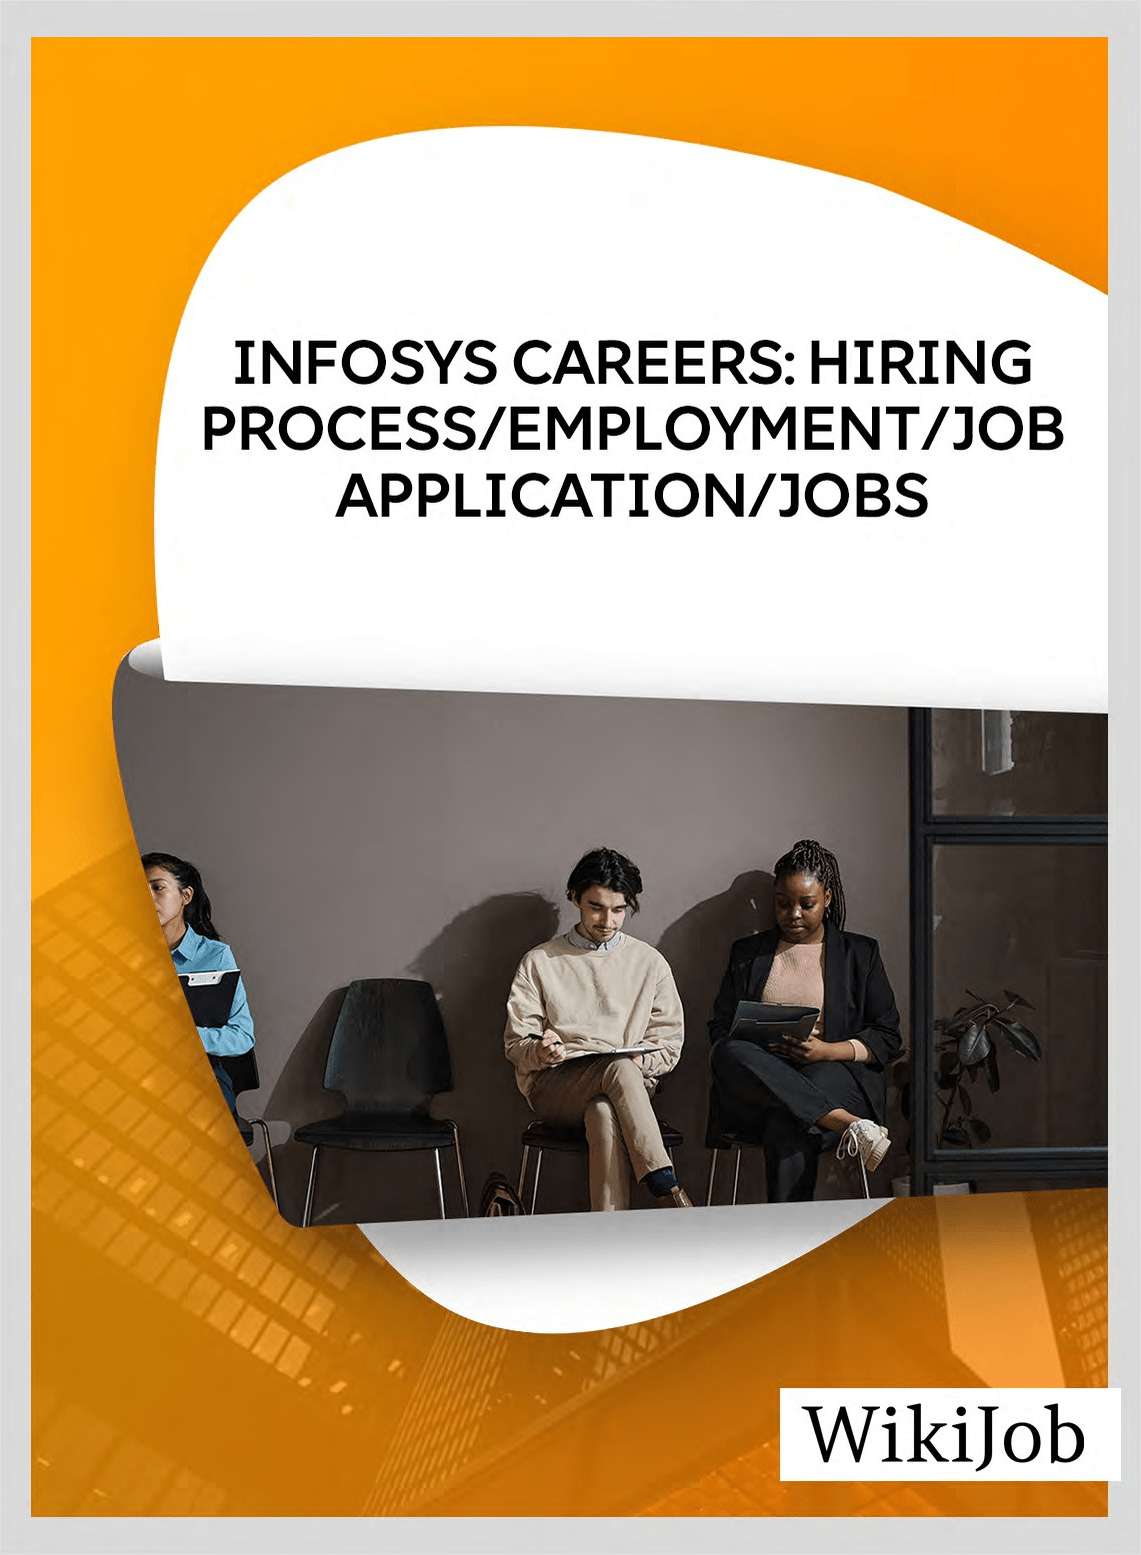 Infosys Careers: Hiring Process/Employment/Job Application/Jobs